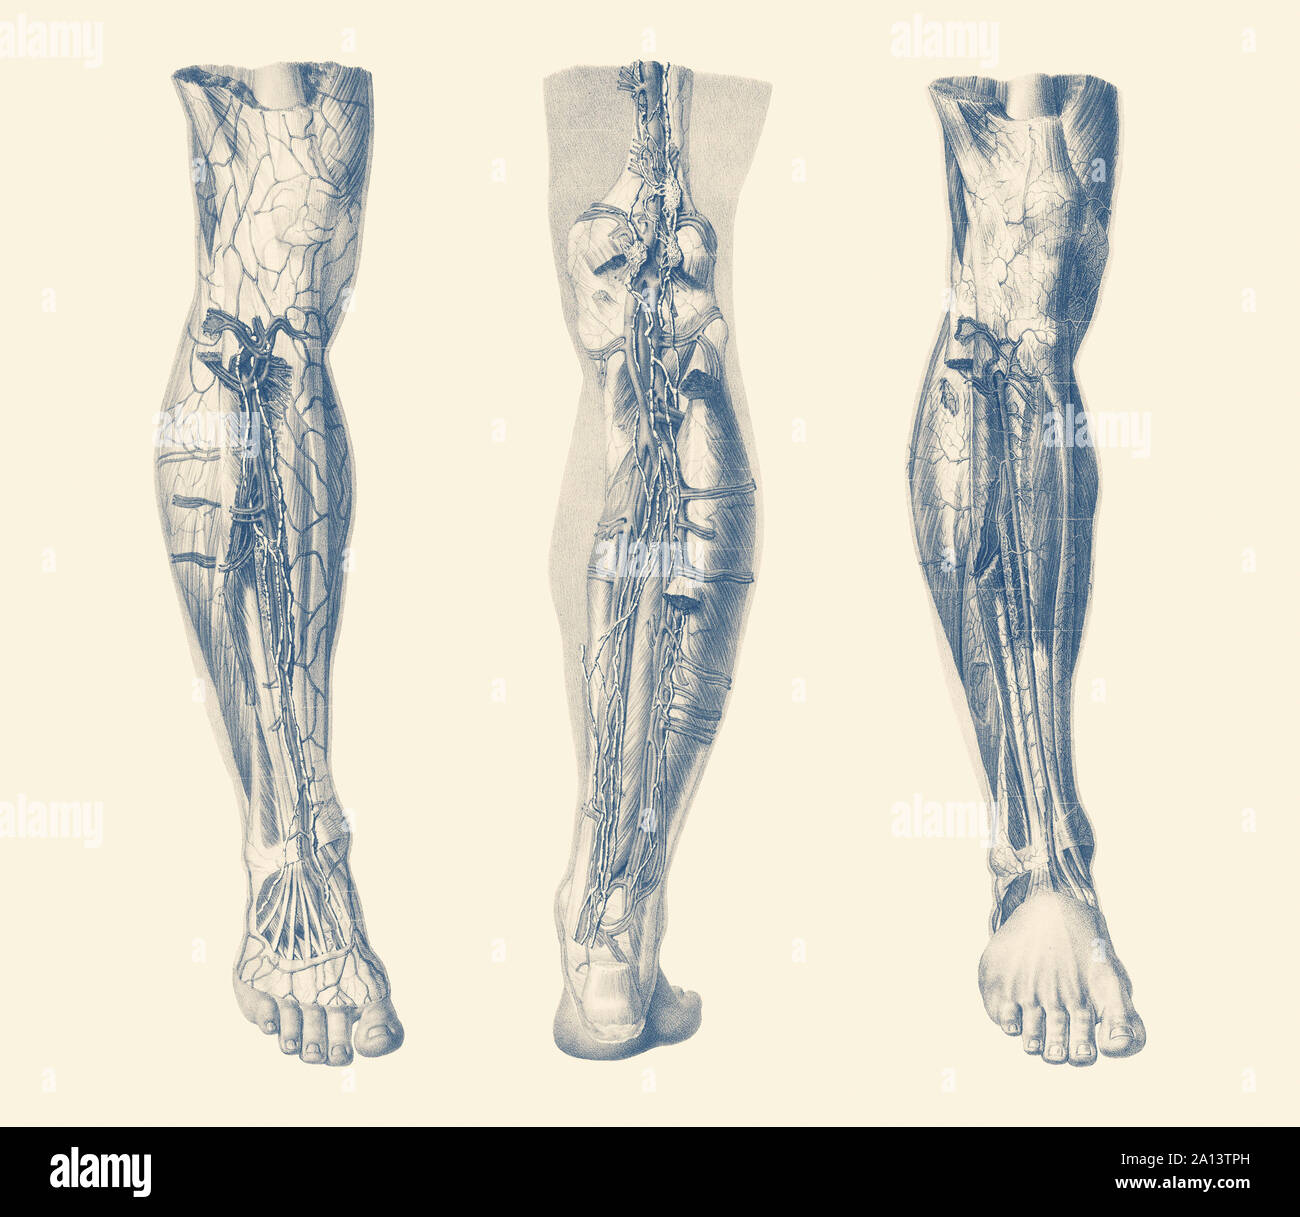 Vintage de impresión que muestra tres vistas del sistema muscular humano de la pierna derecha. Foto de stock